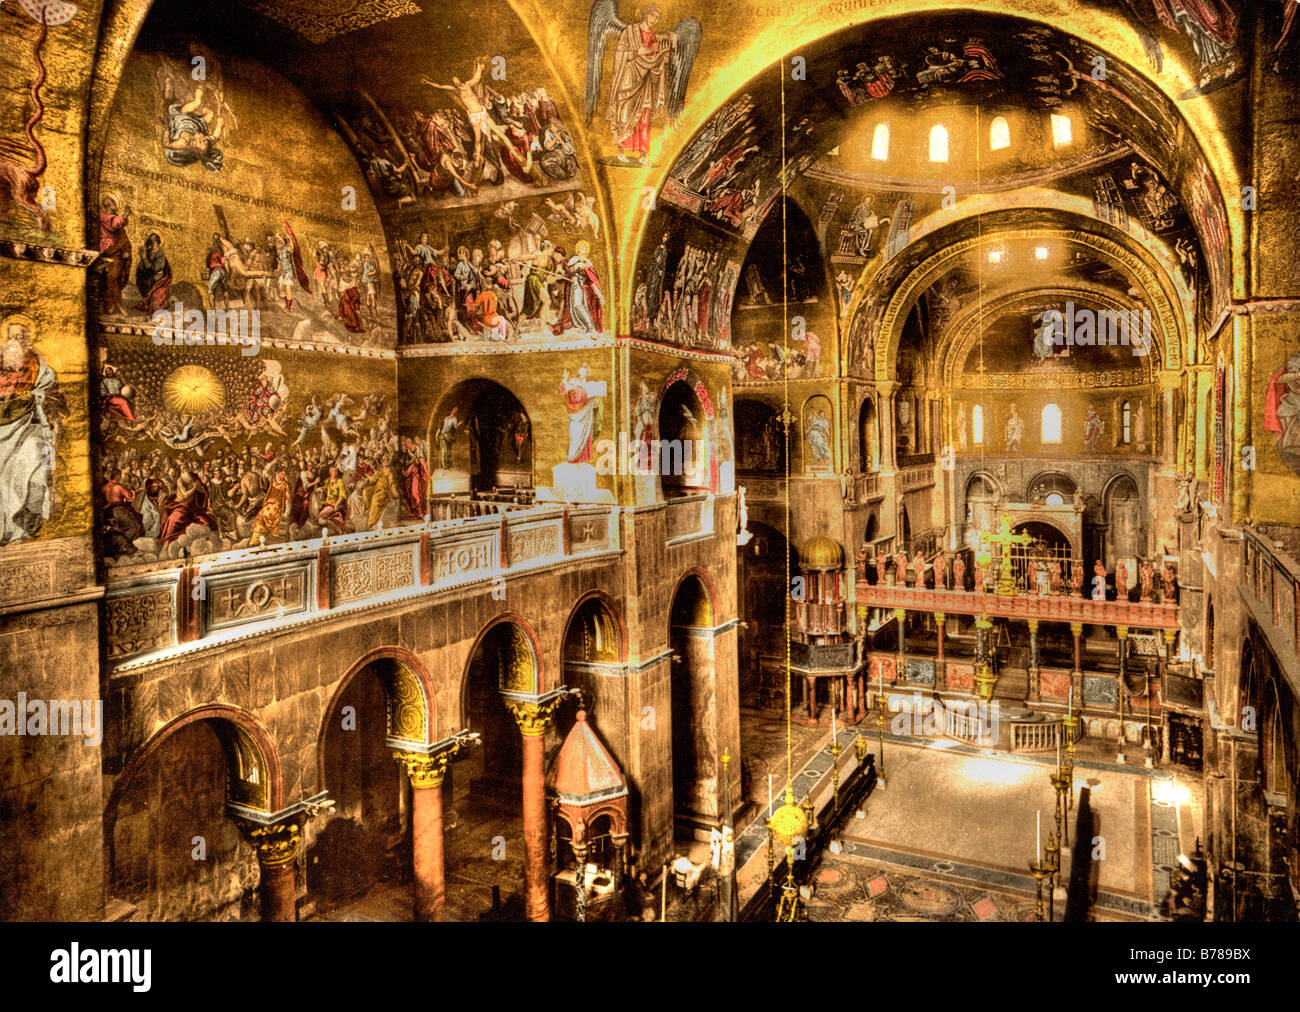 St Mark's Basilica, interior, Venice Italy Stock Photo